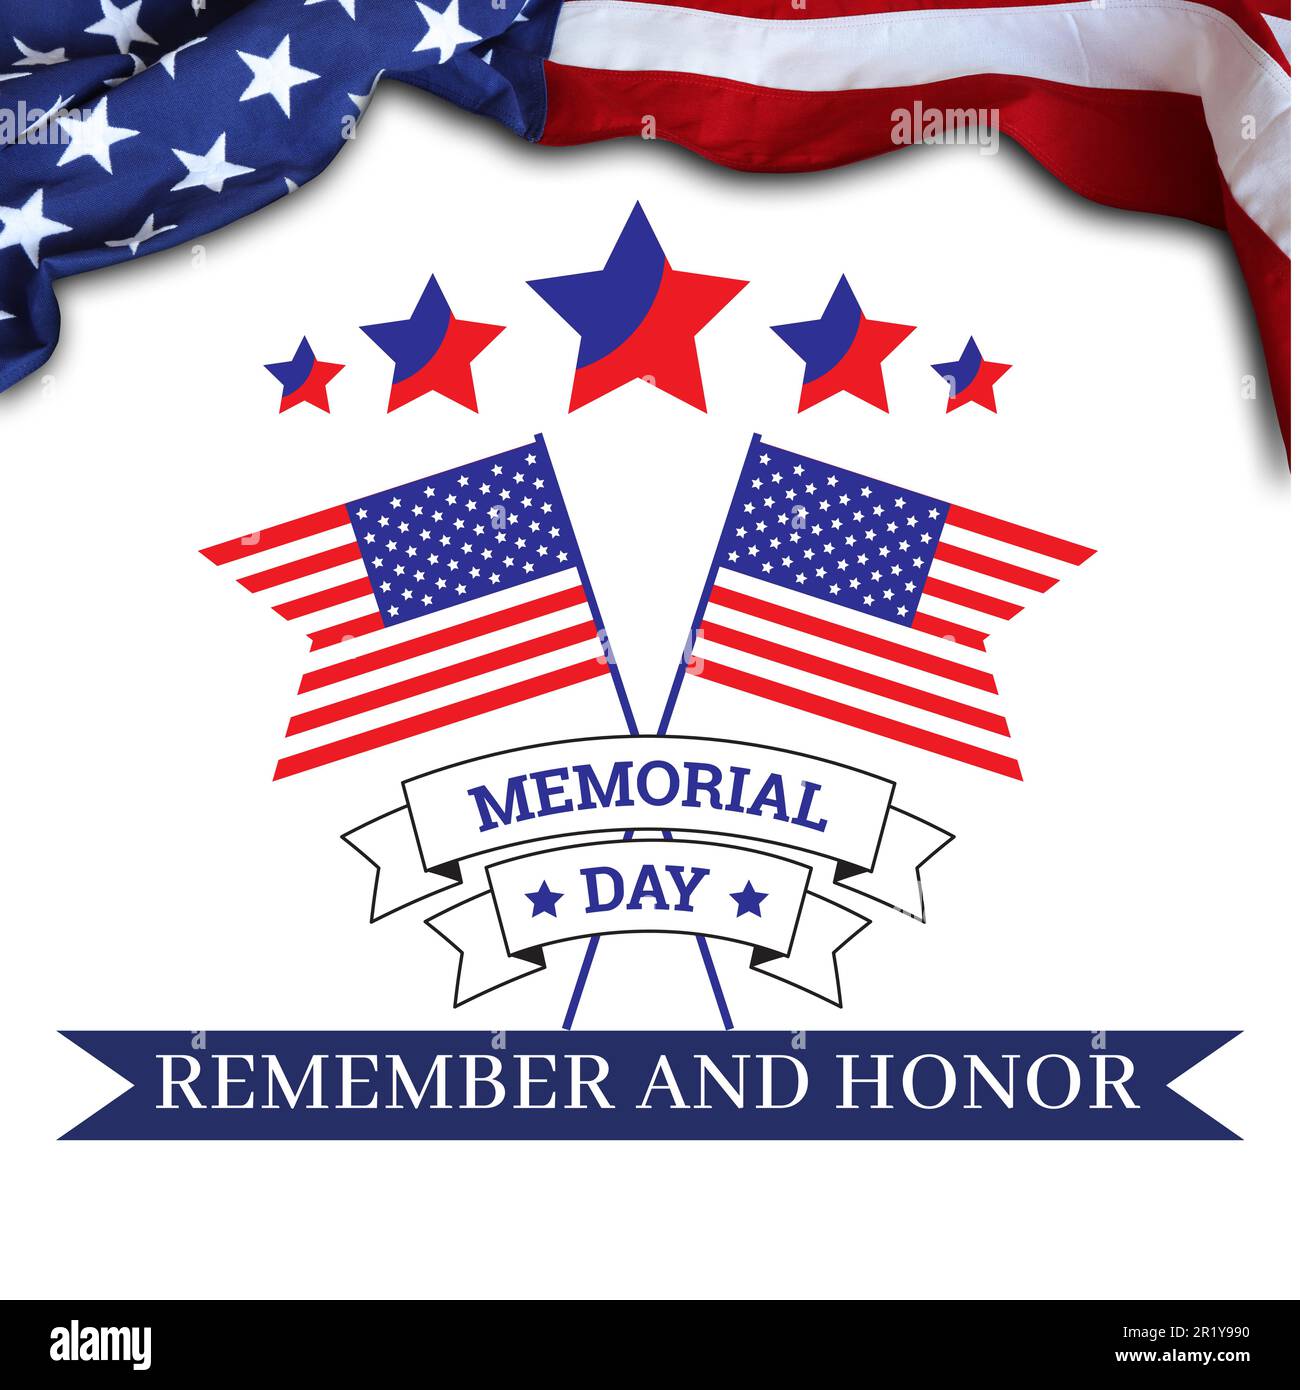 Vektordarstellung zum Memorial Day - amerikanische Flagge, Sterne und Streifen, patriotische Symbole und Text - USA, Nationalfeiertag, Ehre, Erinnerung. Stock Vektor